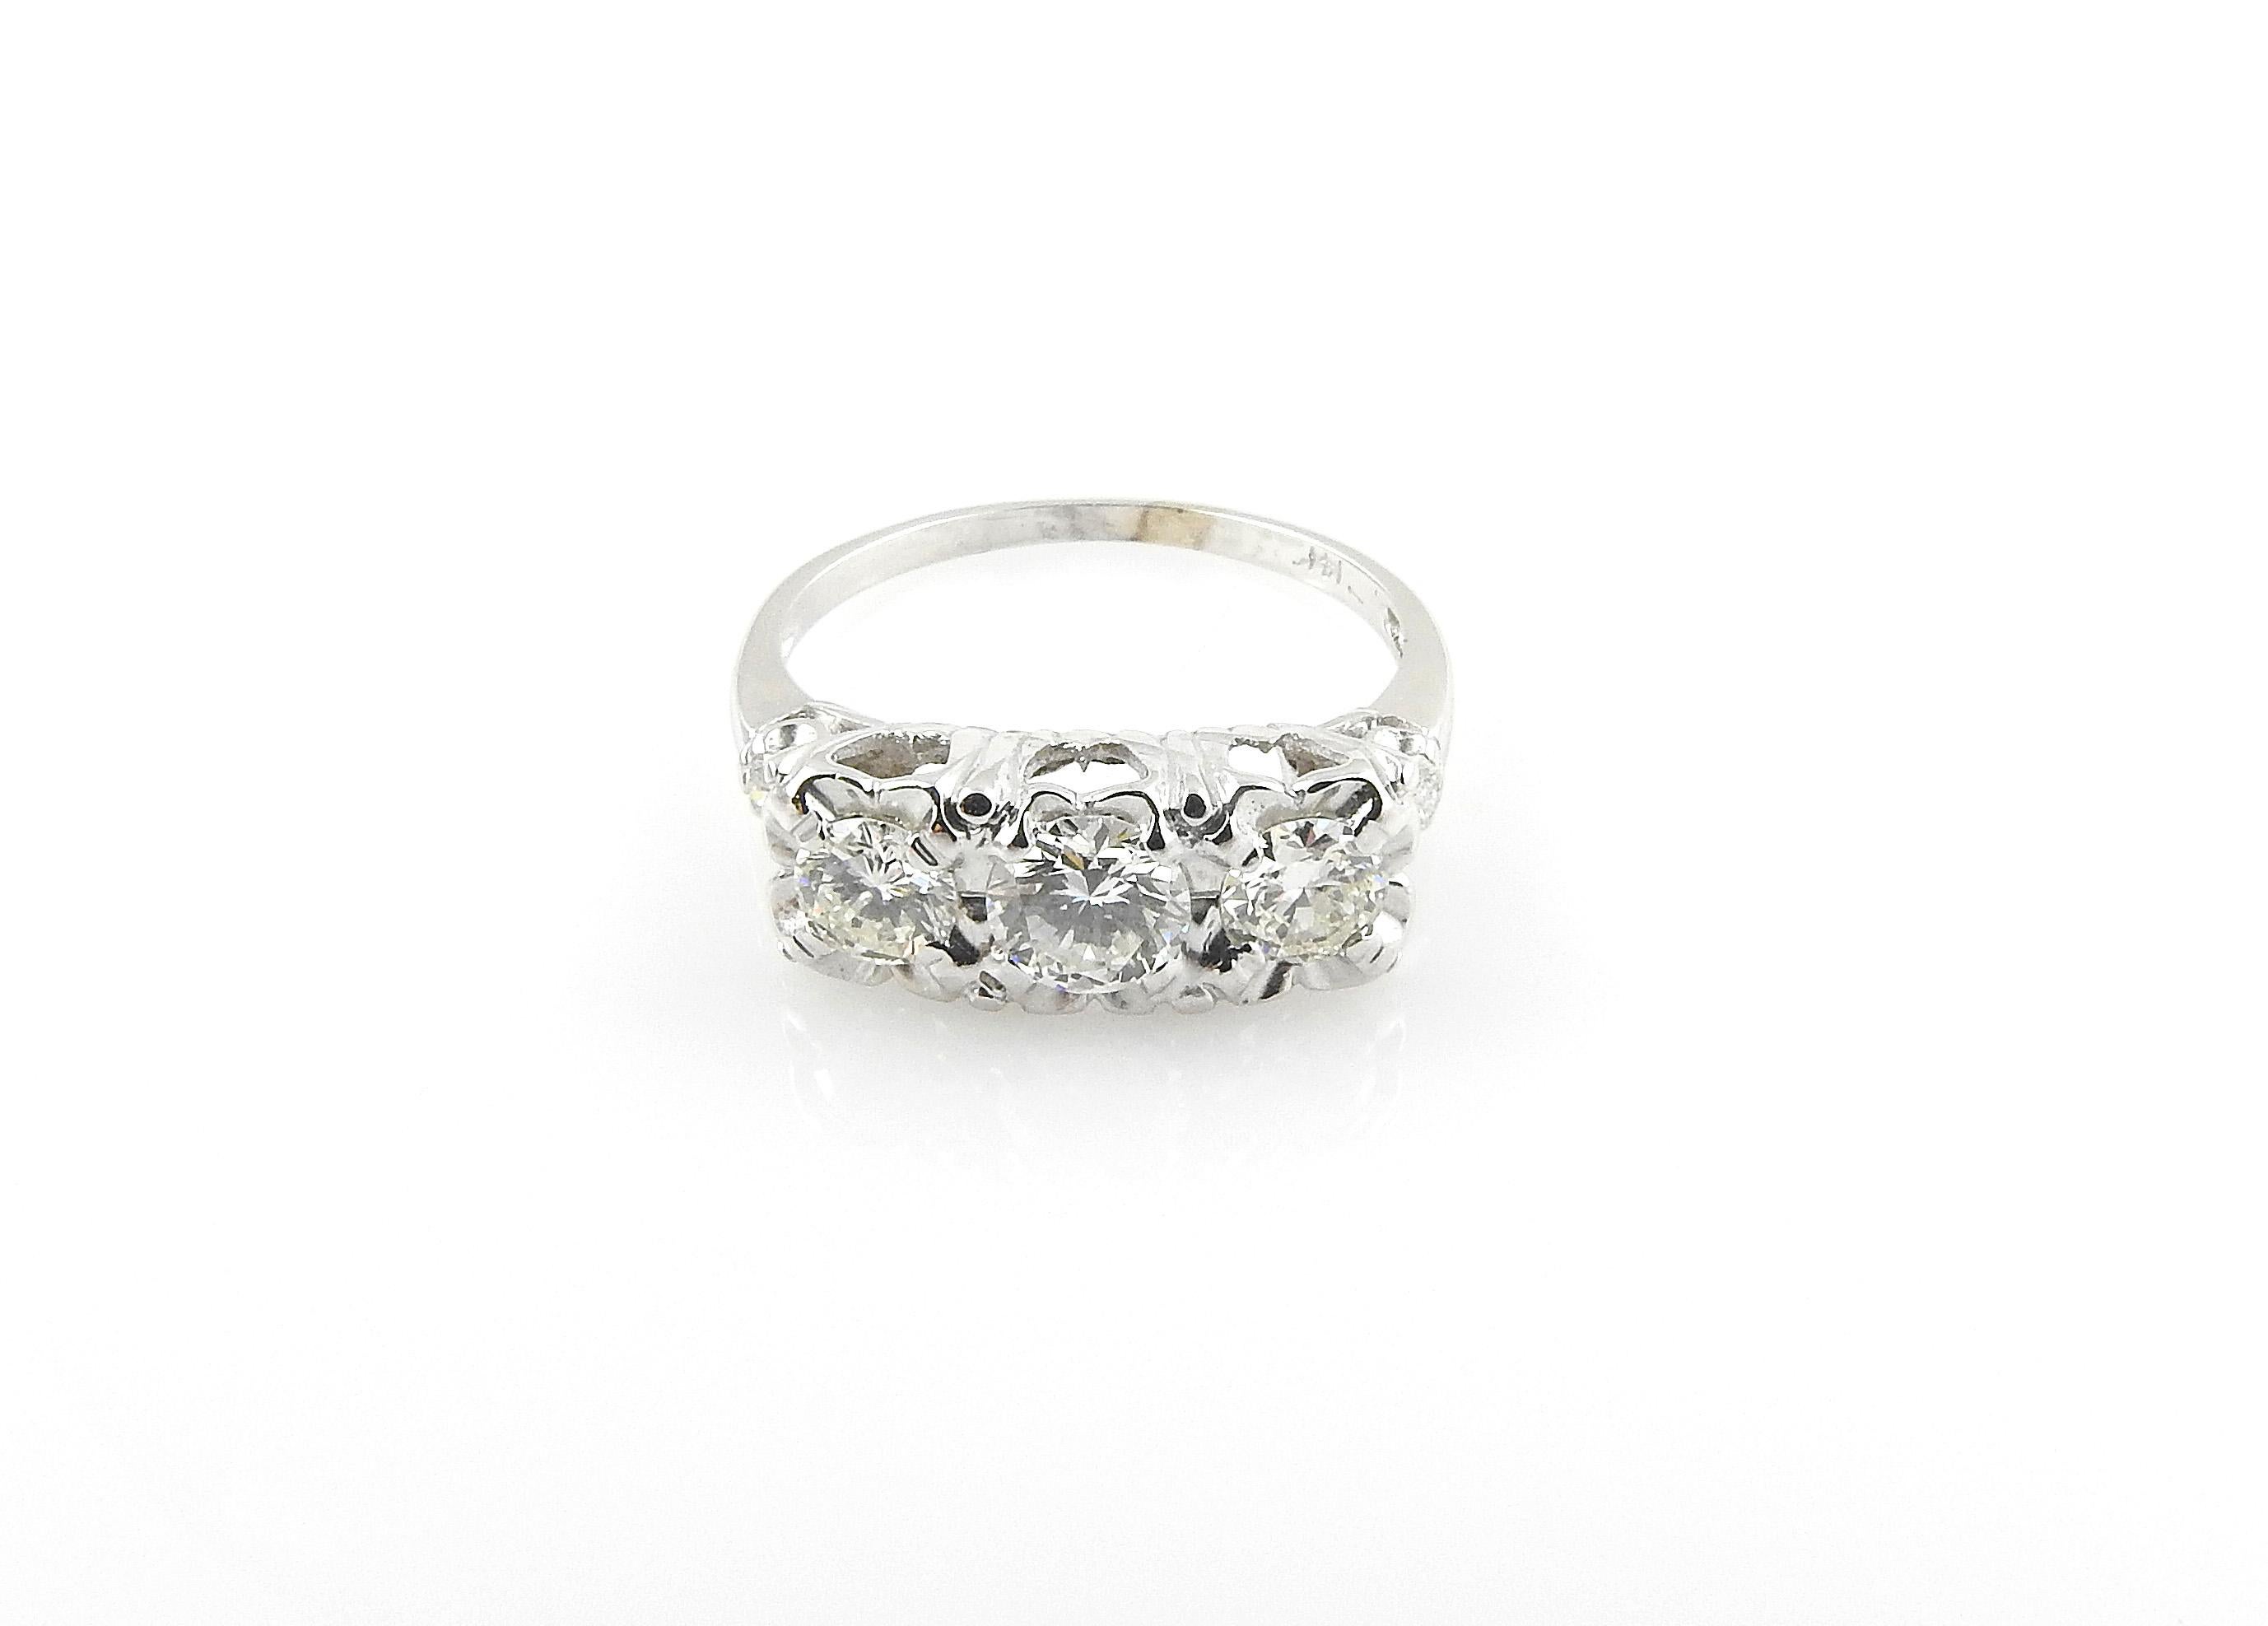 Vintage 14 Karat White Gold 3-Stone Diamond Ring 1.2 Carat 4